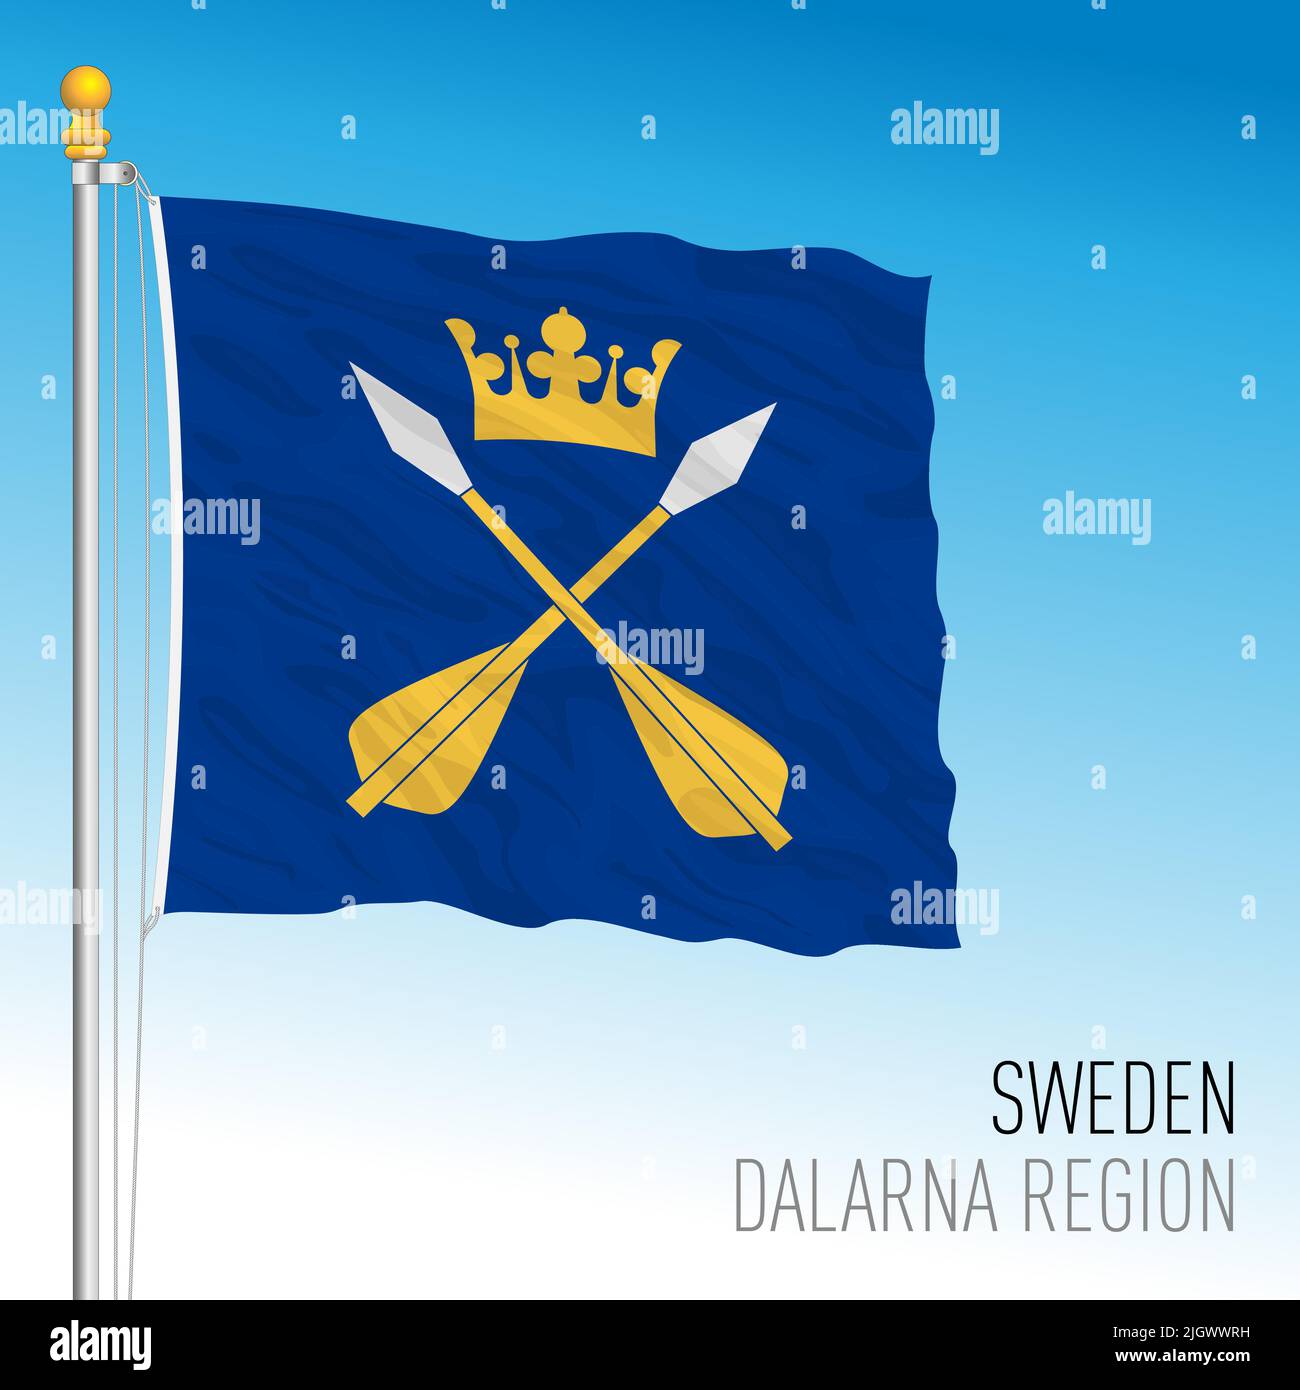 Bandera regional de Dalarna, Reino de Suecia, ilustración de vectores Ilustración del Vector